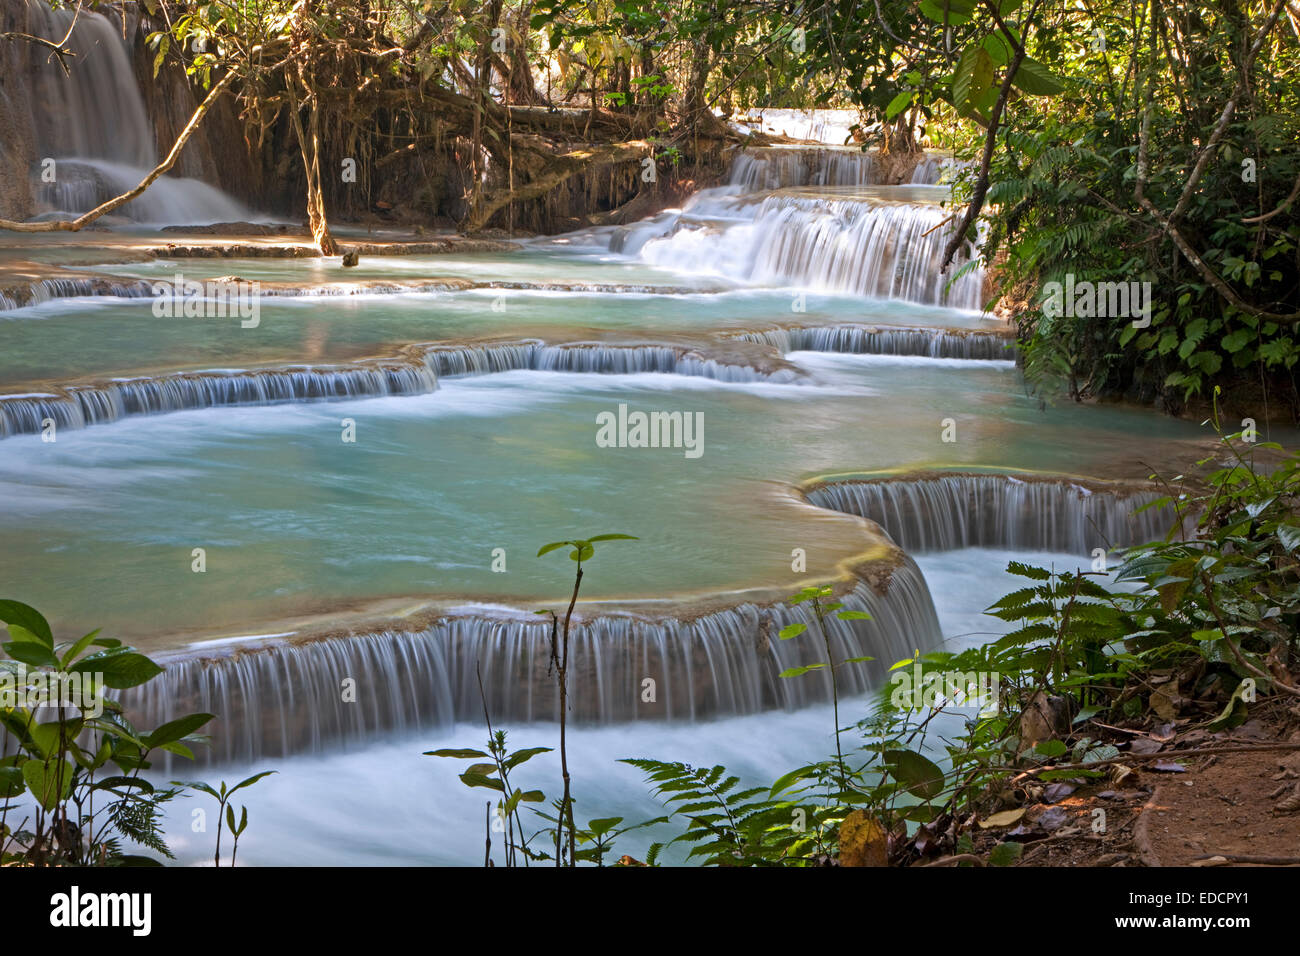 Le travertin cascades et piscines bleu turquoise de la chutes de Kuang Si / Kuang Xi / Tat Cascades de Kuang Si près de Luang Prabang, Laos Banque D'Images